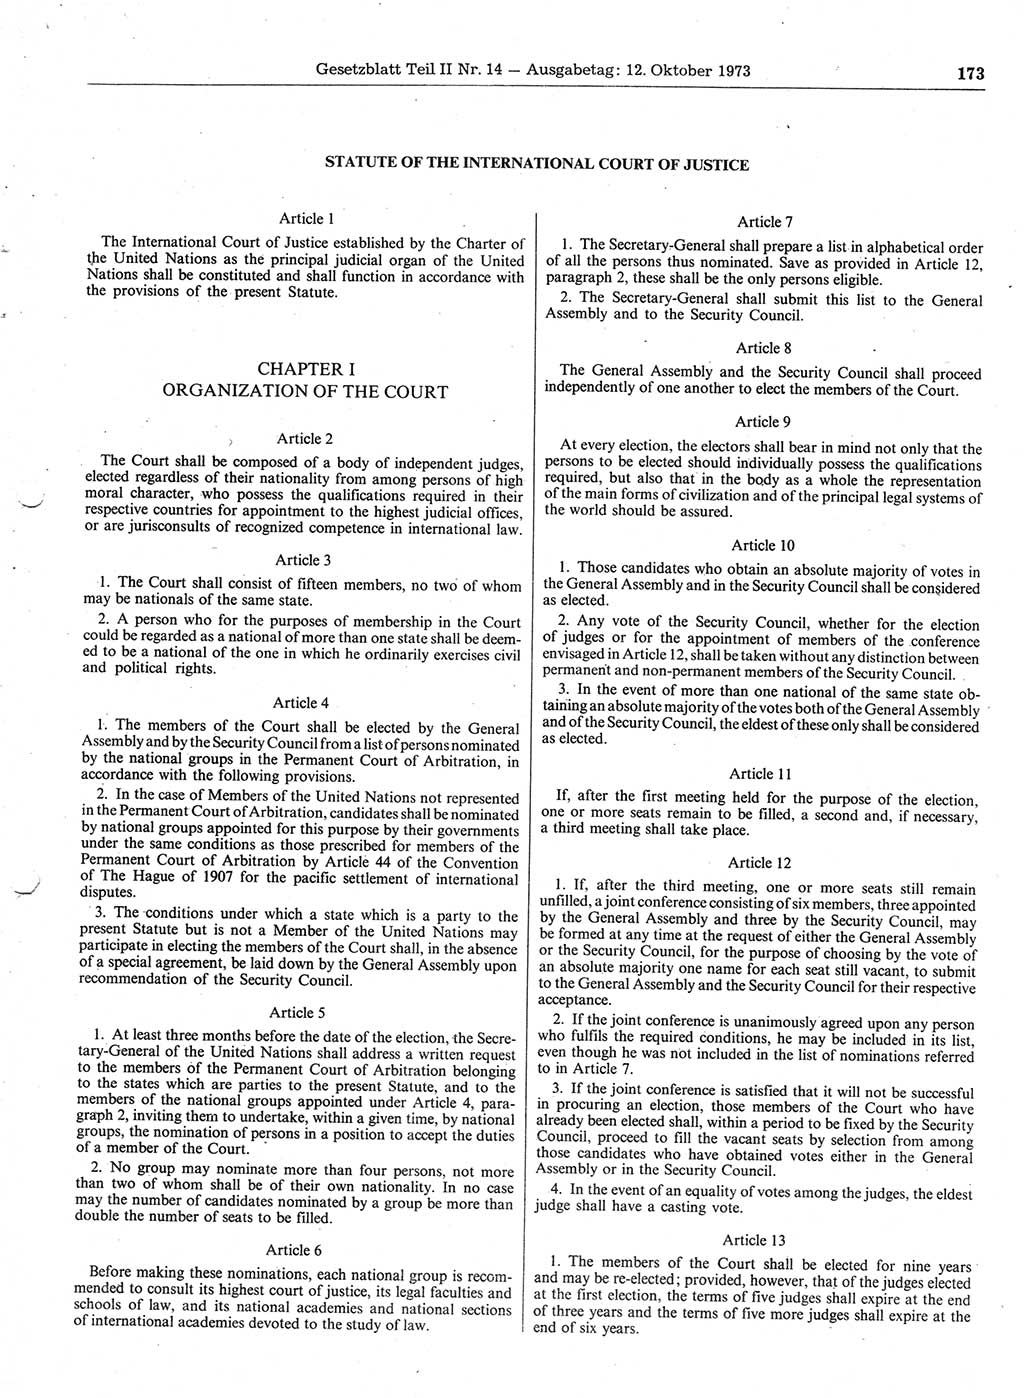 Gesetzblatt (GBl.) der Deutschen Demokratischen Republik (DDR) Teil ⅠⅠ 1973, Seite 173 (GBl. DDR ⅠⅠ 1973, S. 173)